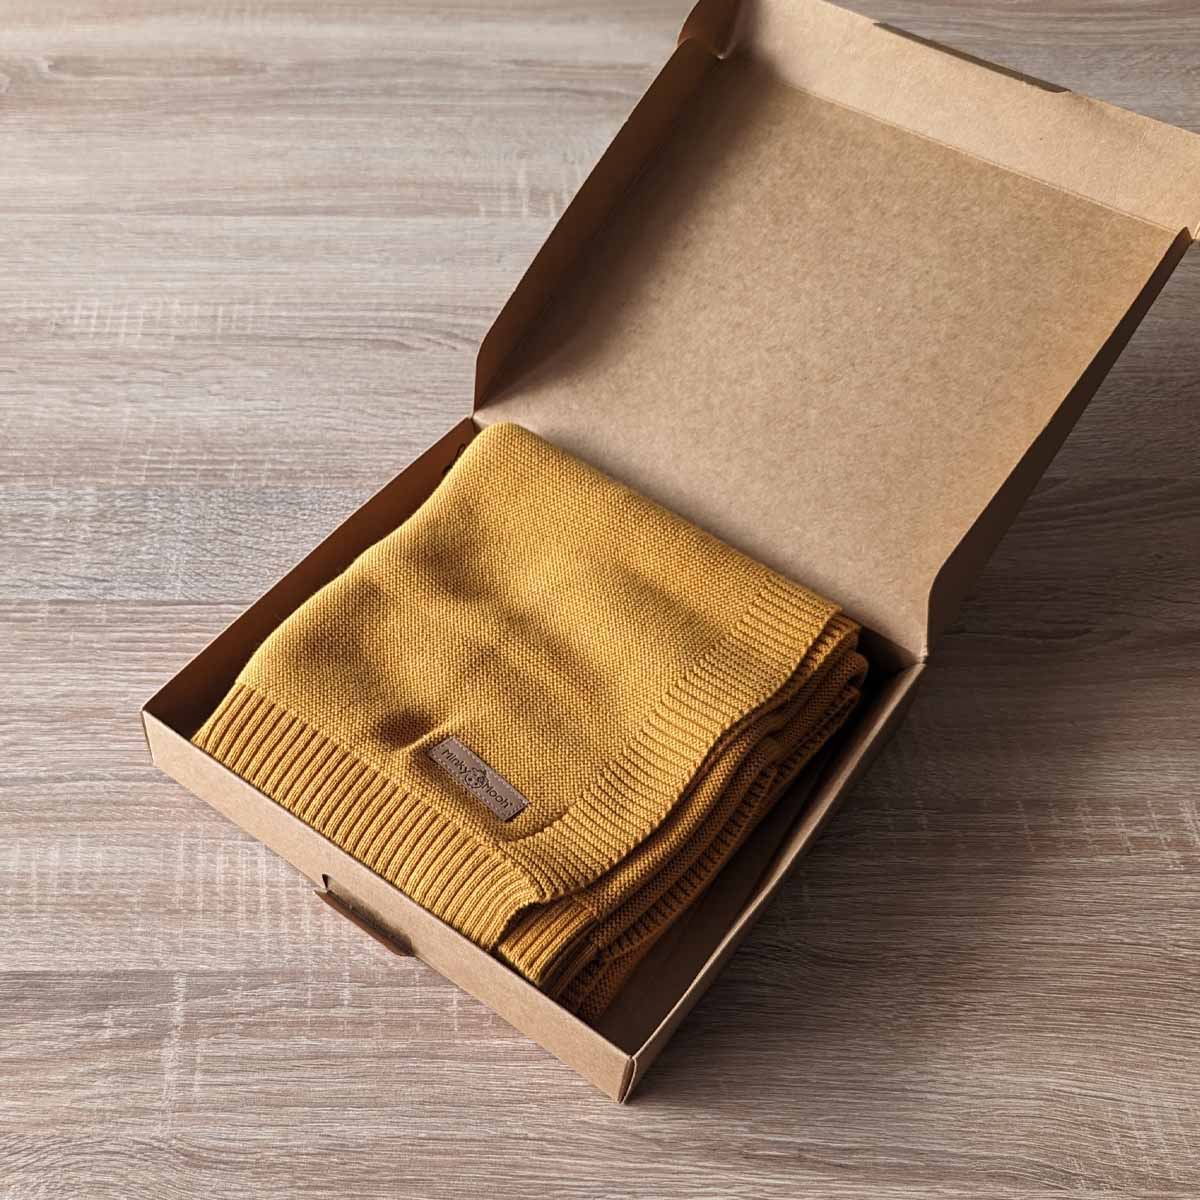 Gefaltete dunkel-gelbe Bio-Baumwolldecke in einer offenen braunen Kartonverpackung.